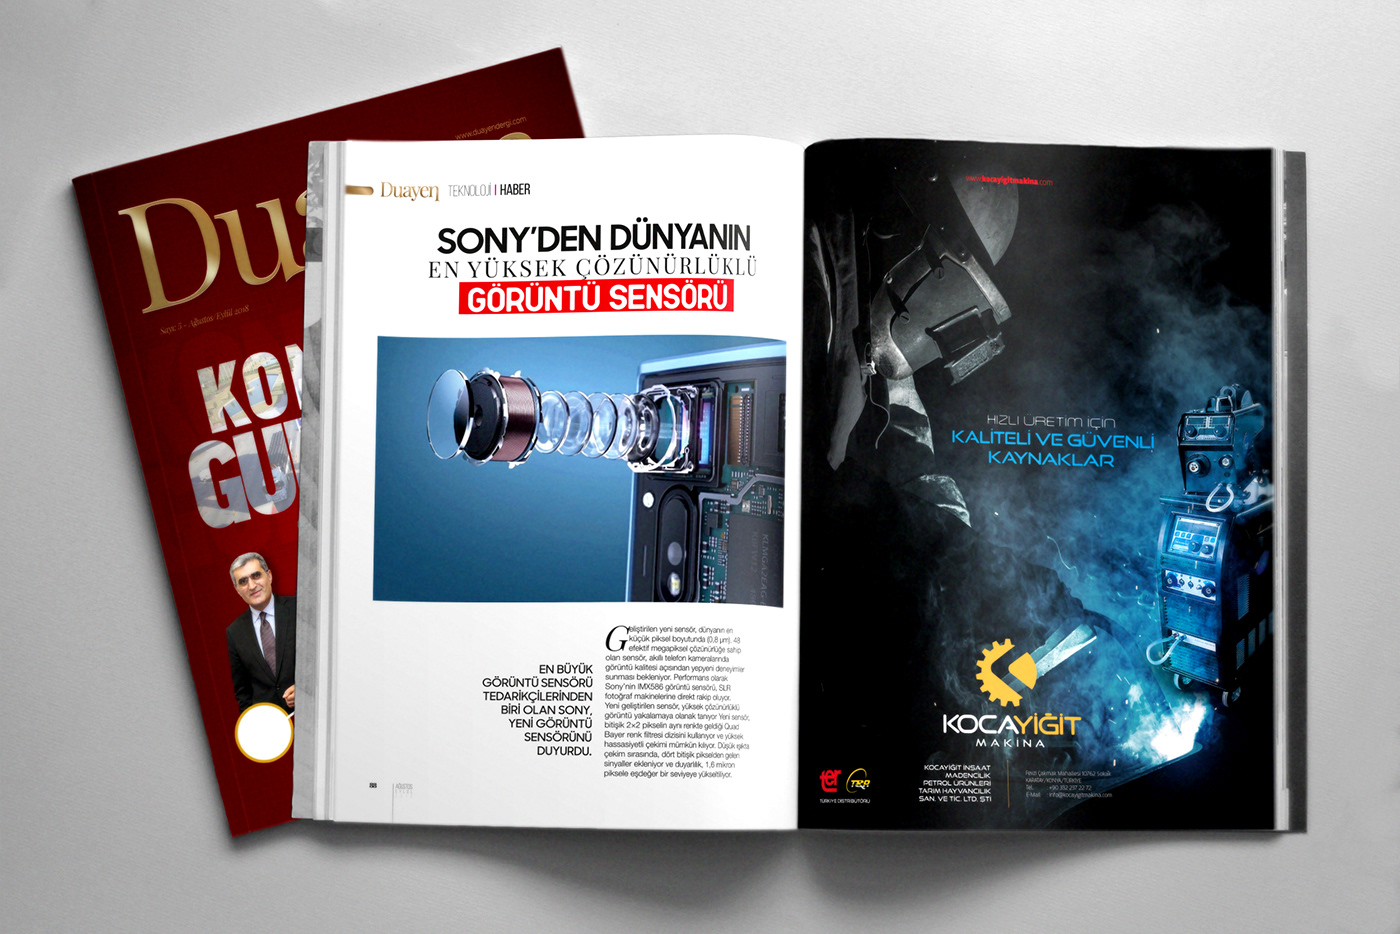 Dergi magazine design creative kreatif dergi tasarımı Dergi Kapak